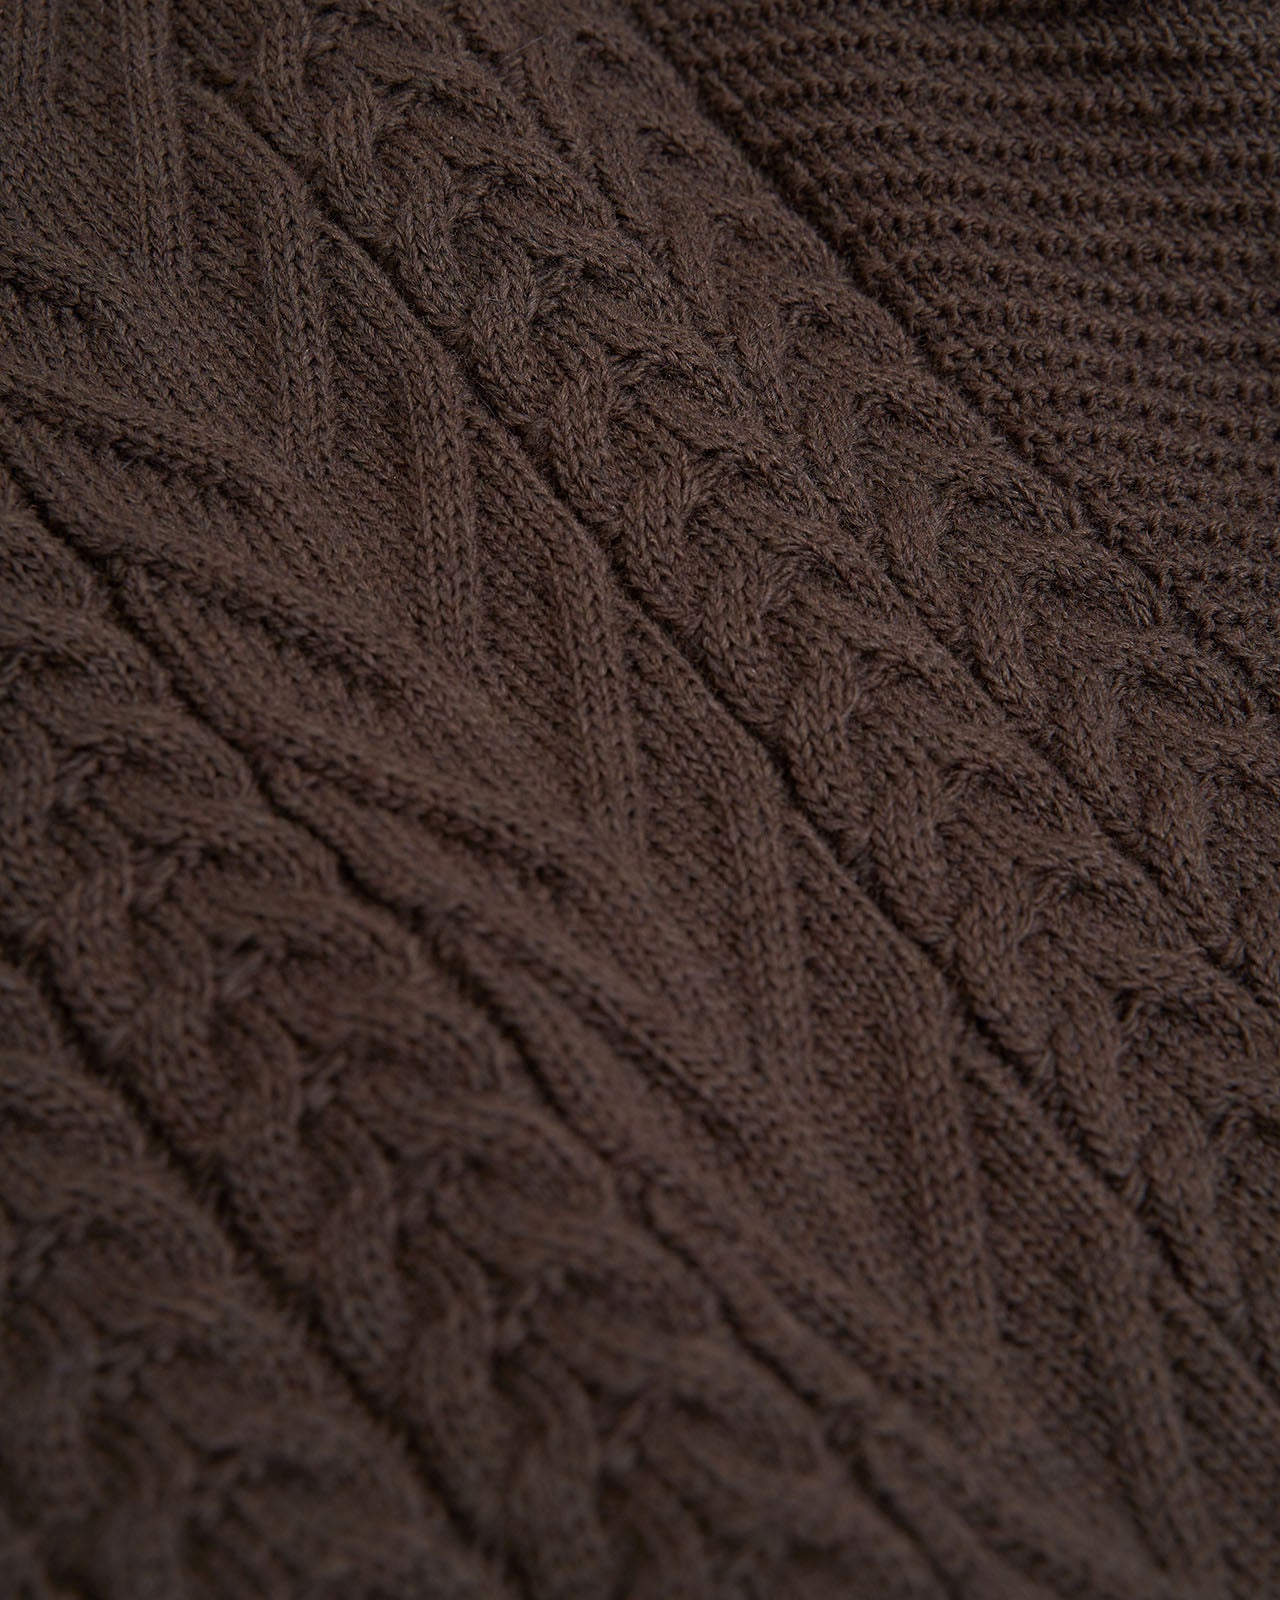 braids on wool men's sweater